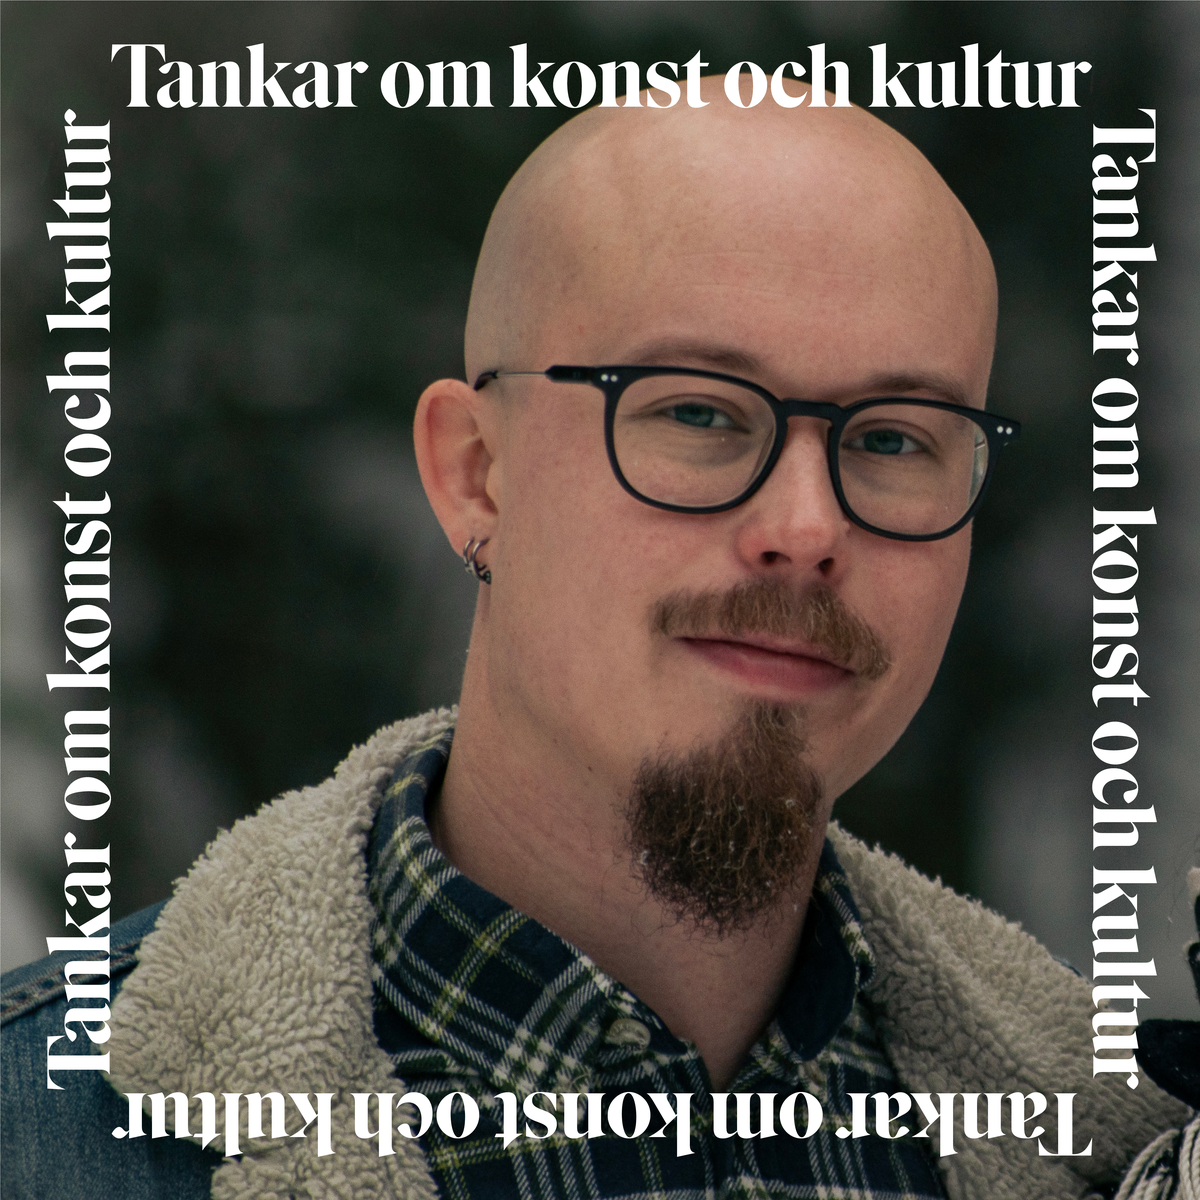 Jesper_Tankar_puff